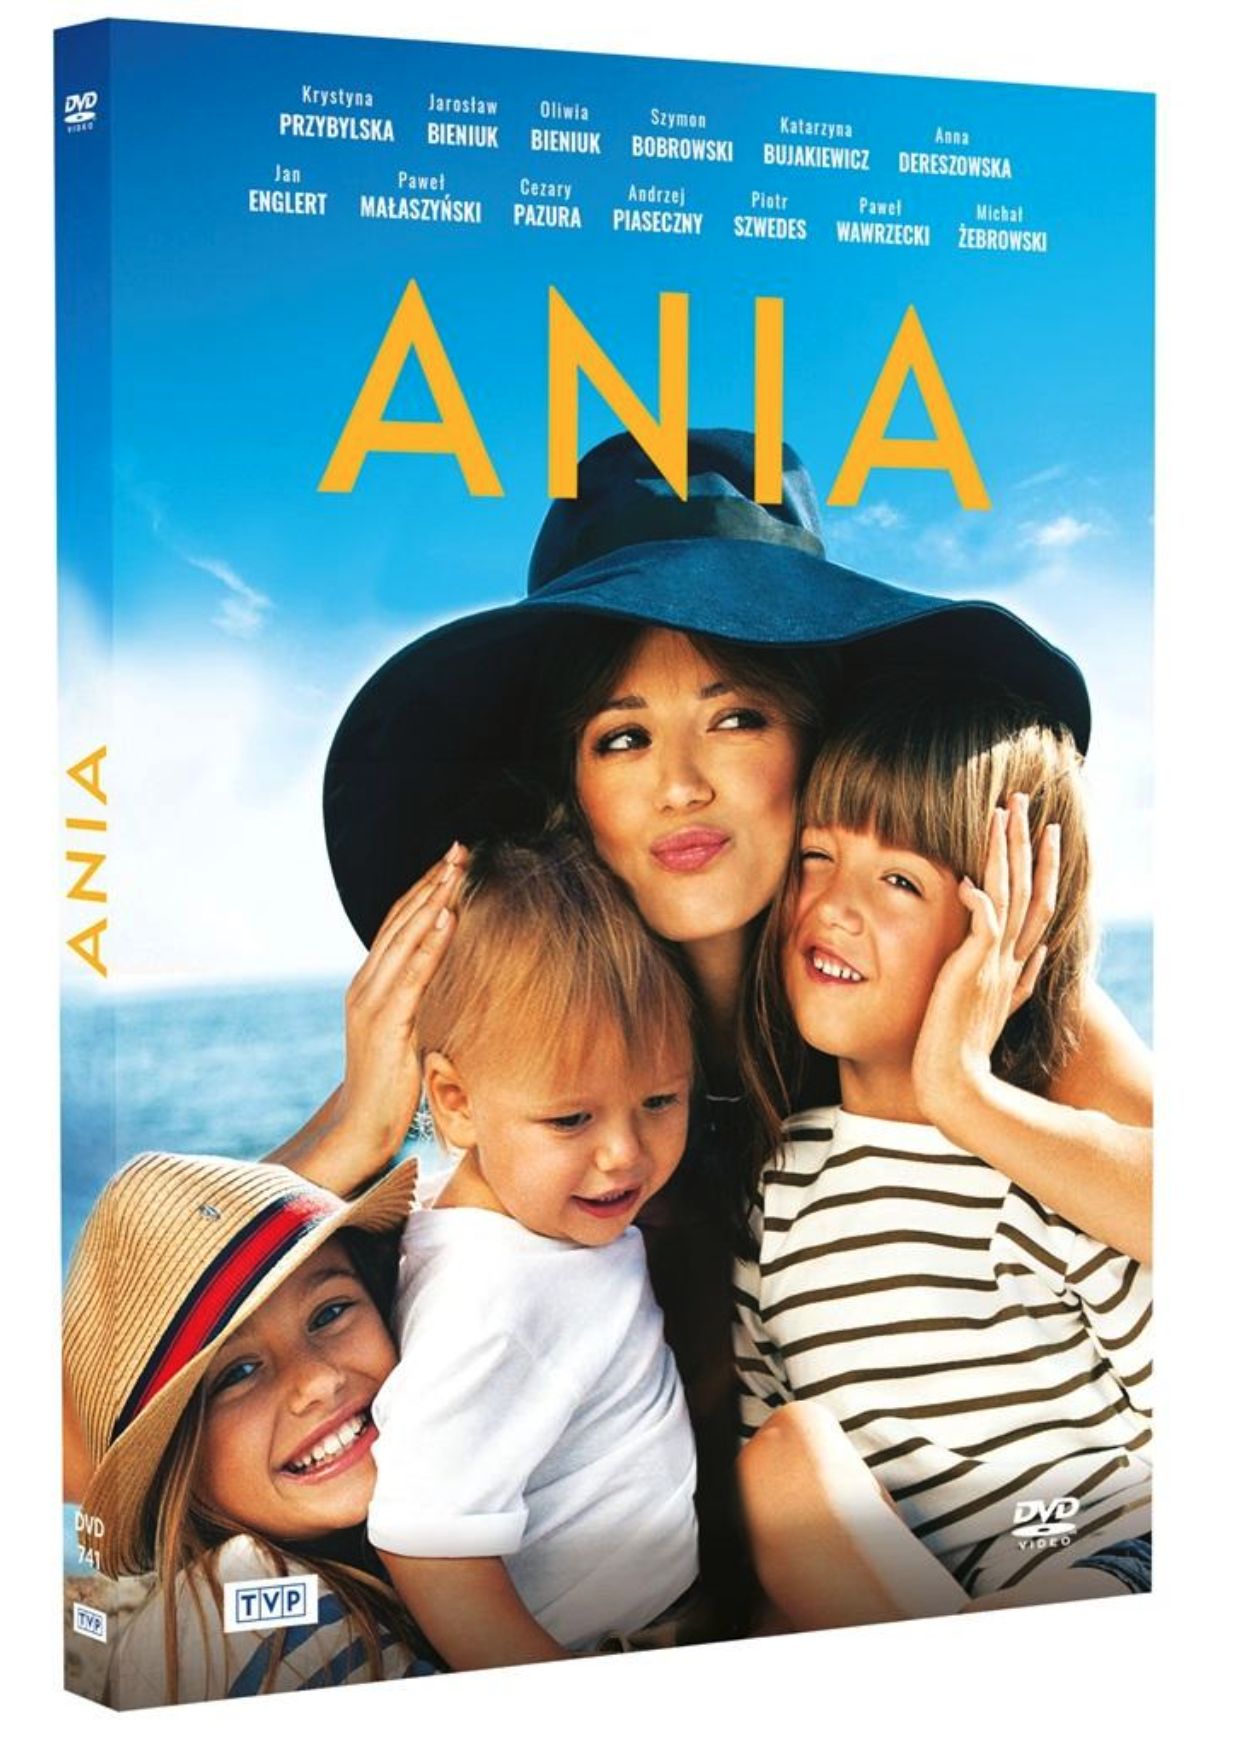 Okładka filmu na płycie DVD o tytule Ania